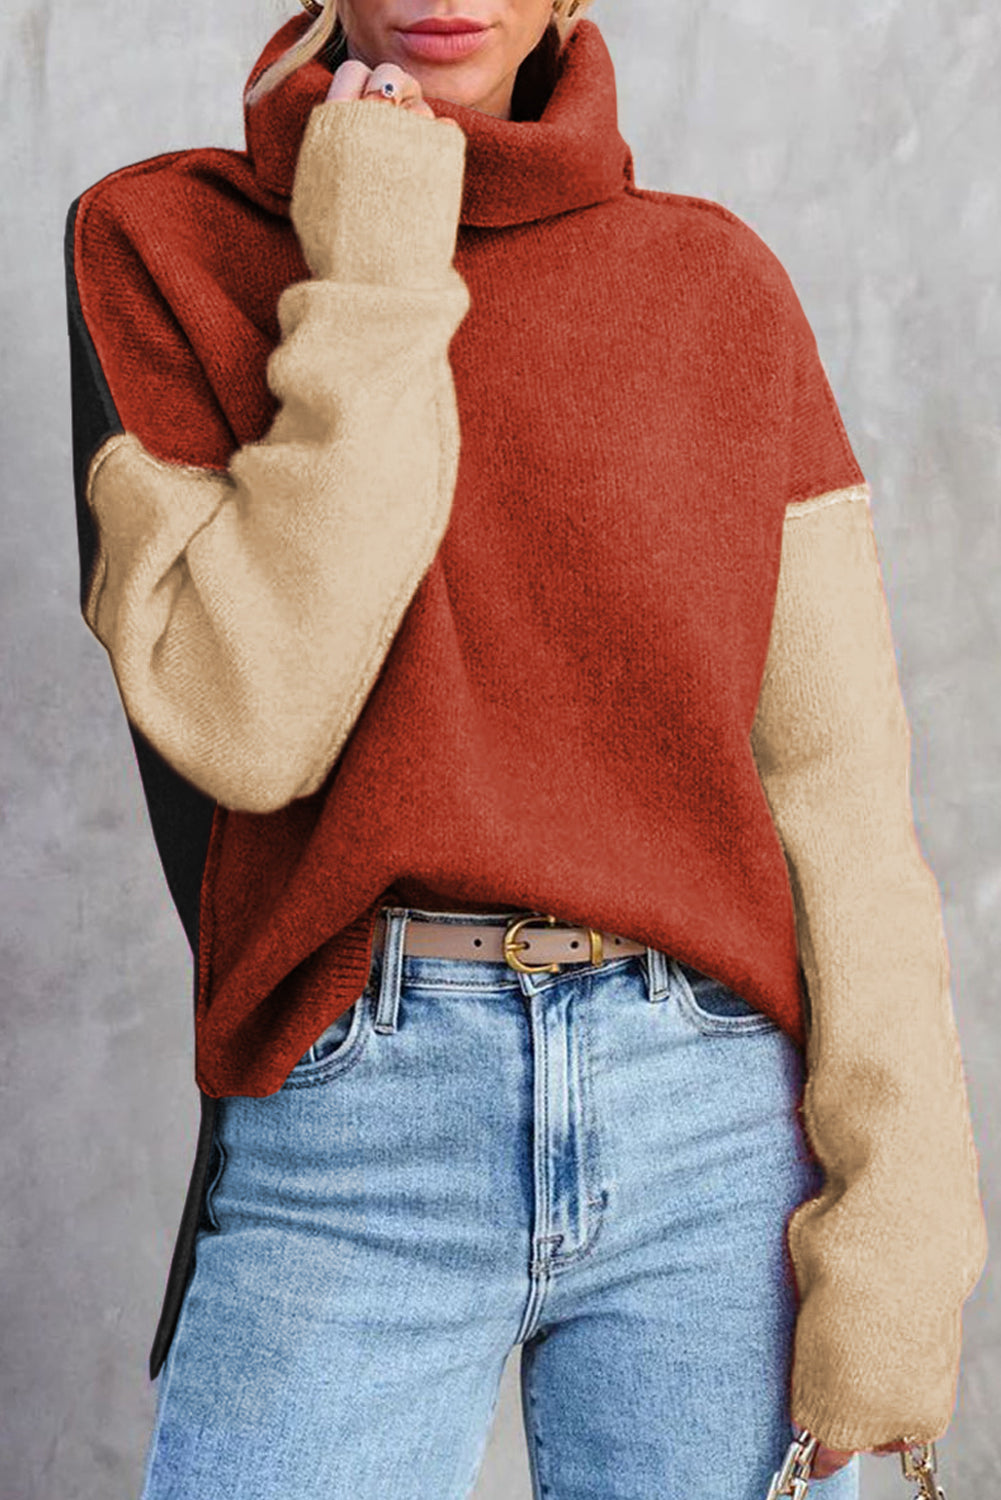 Pleten pulover z želvjim ovratnikom in padajočimi rameni iz glinene rdeče barve